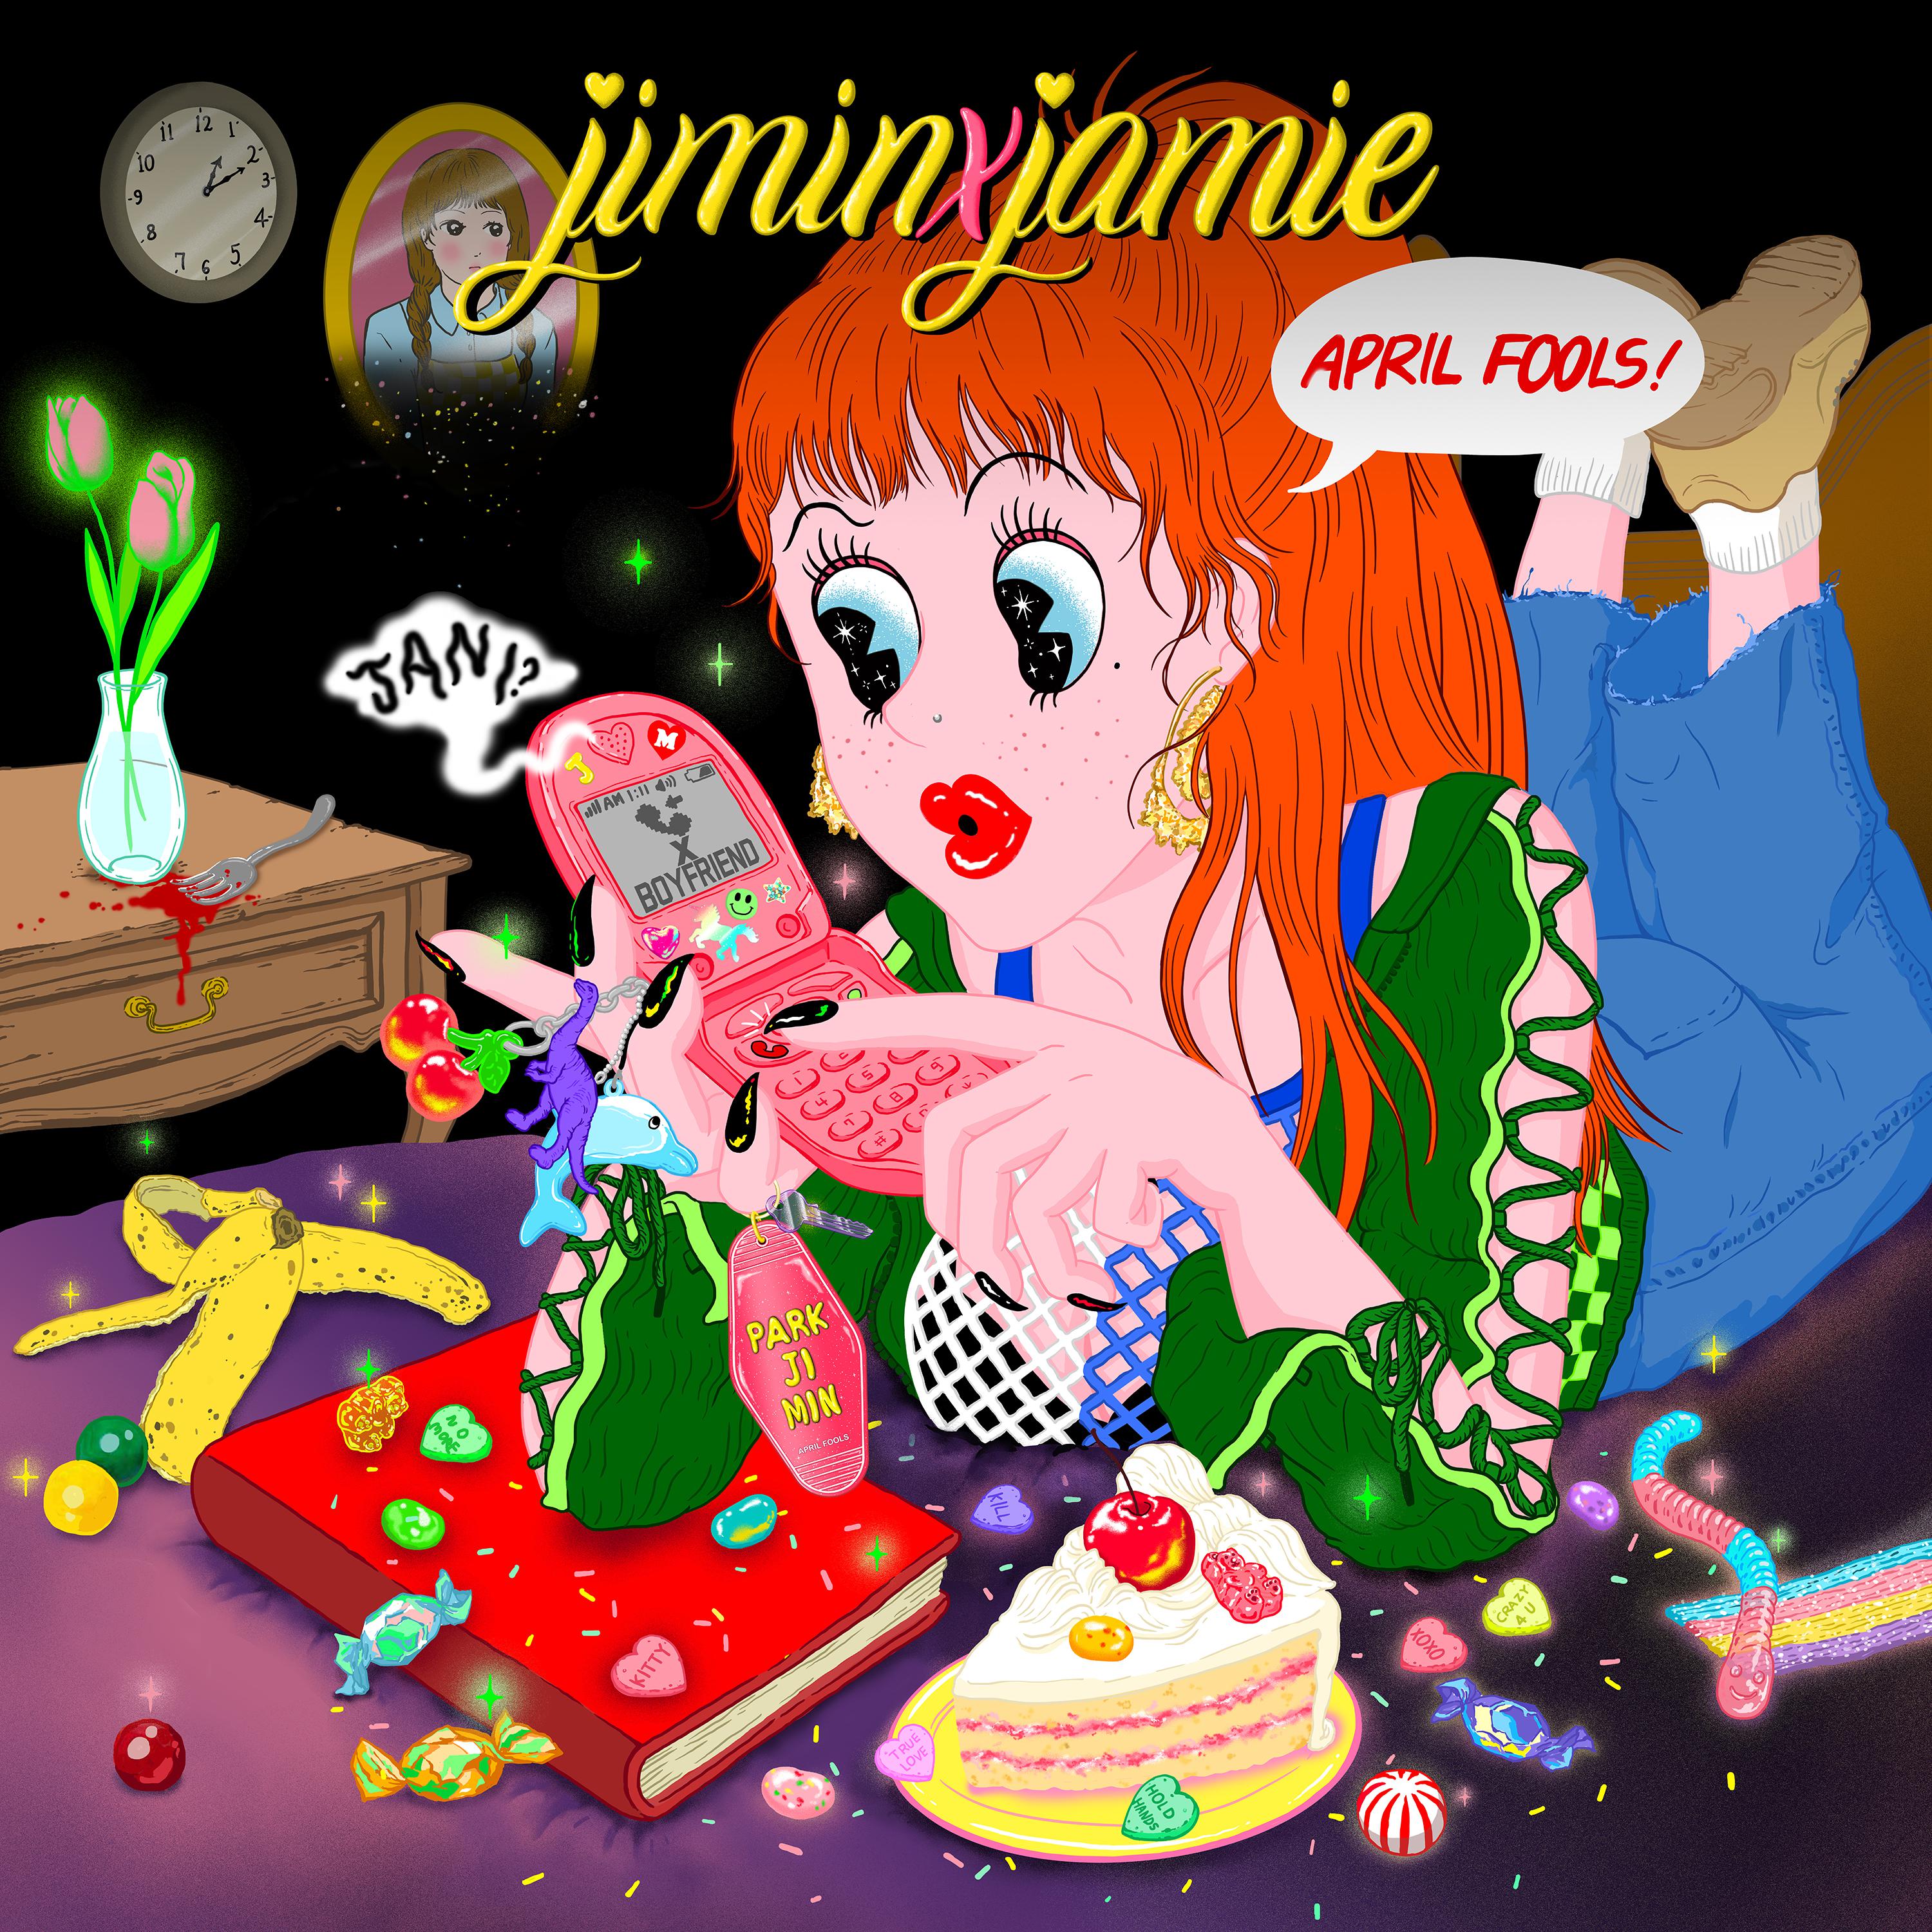 뭐니歌词 歌手JAMIE / OLNL-专辑jiminxjamie-单曲《뭐니》LRC歌词下载